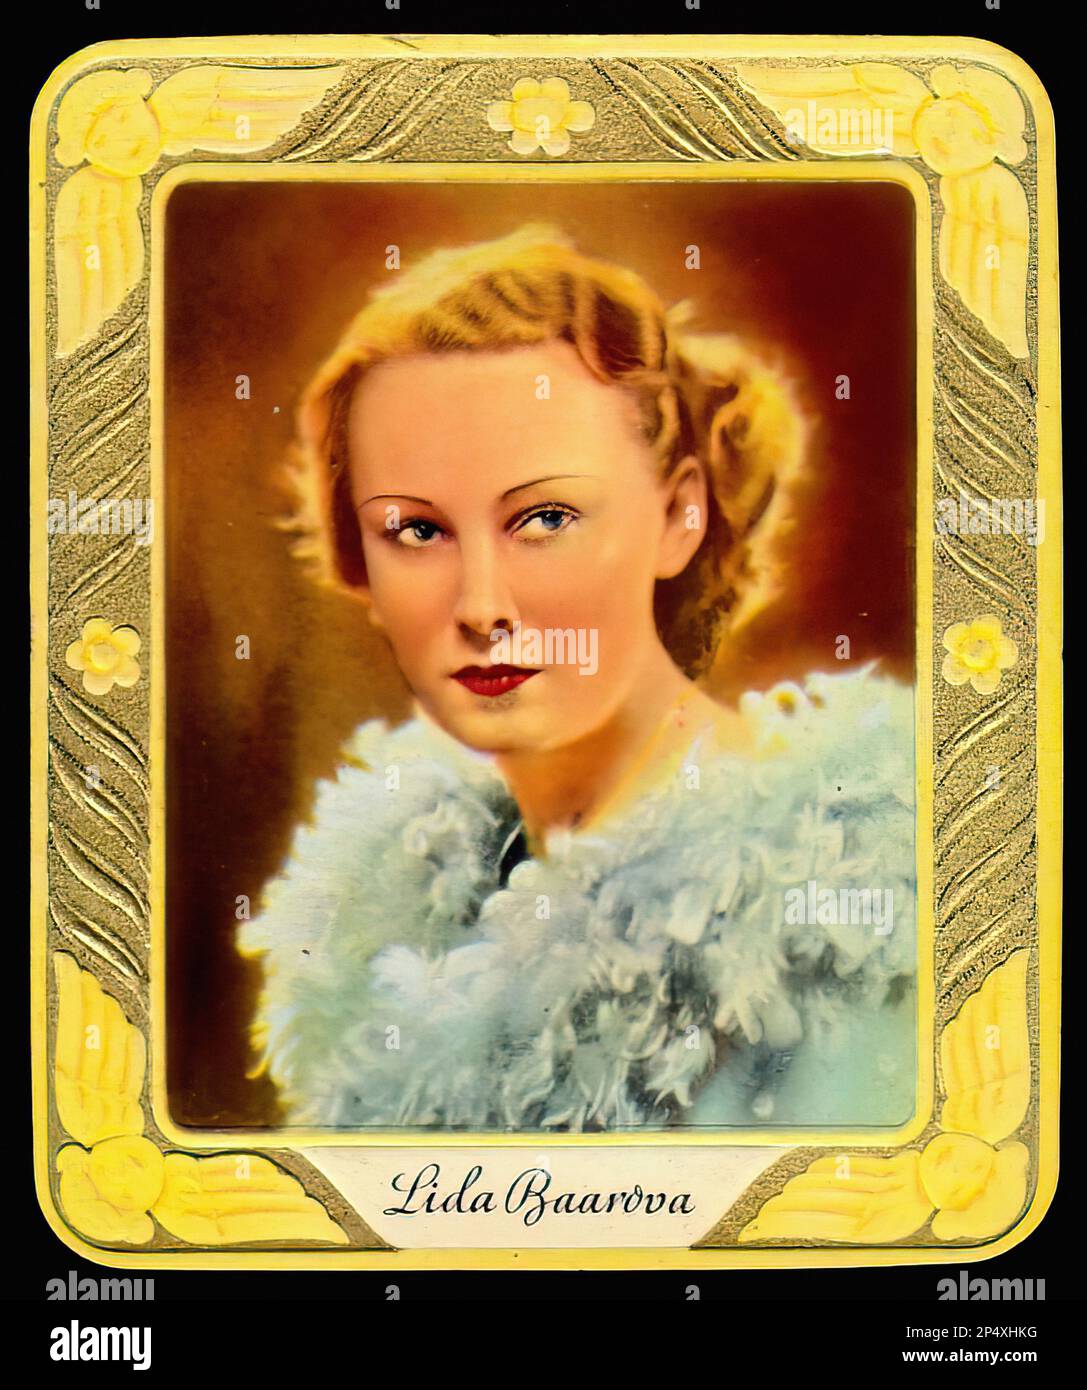 Portrait of Lida Baarova - Vintage Cigarette Card Stock Photo